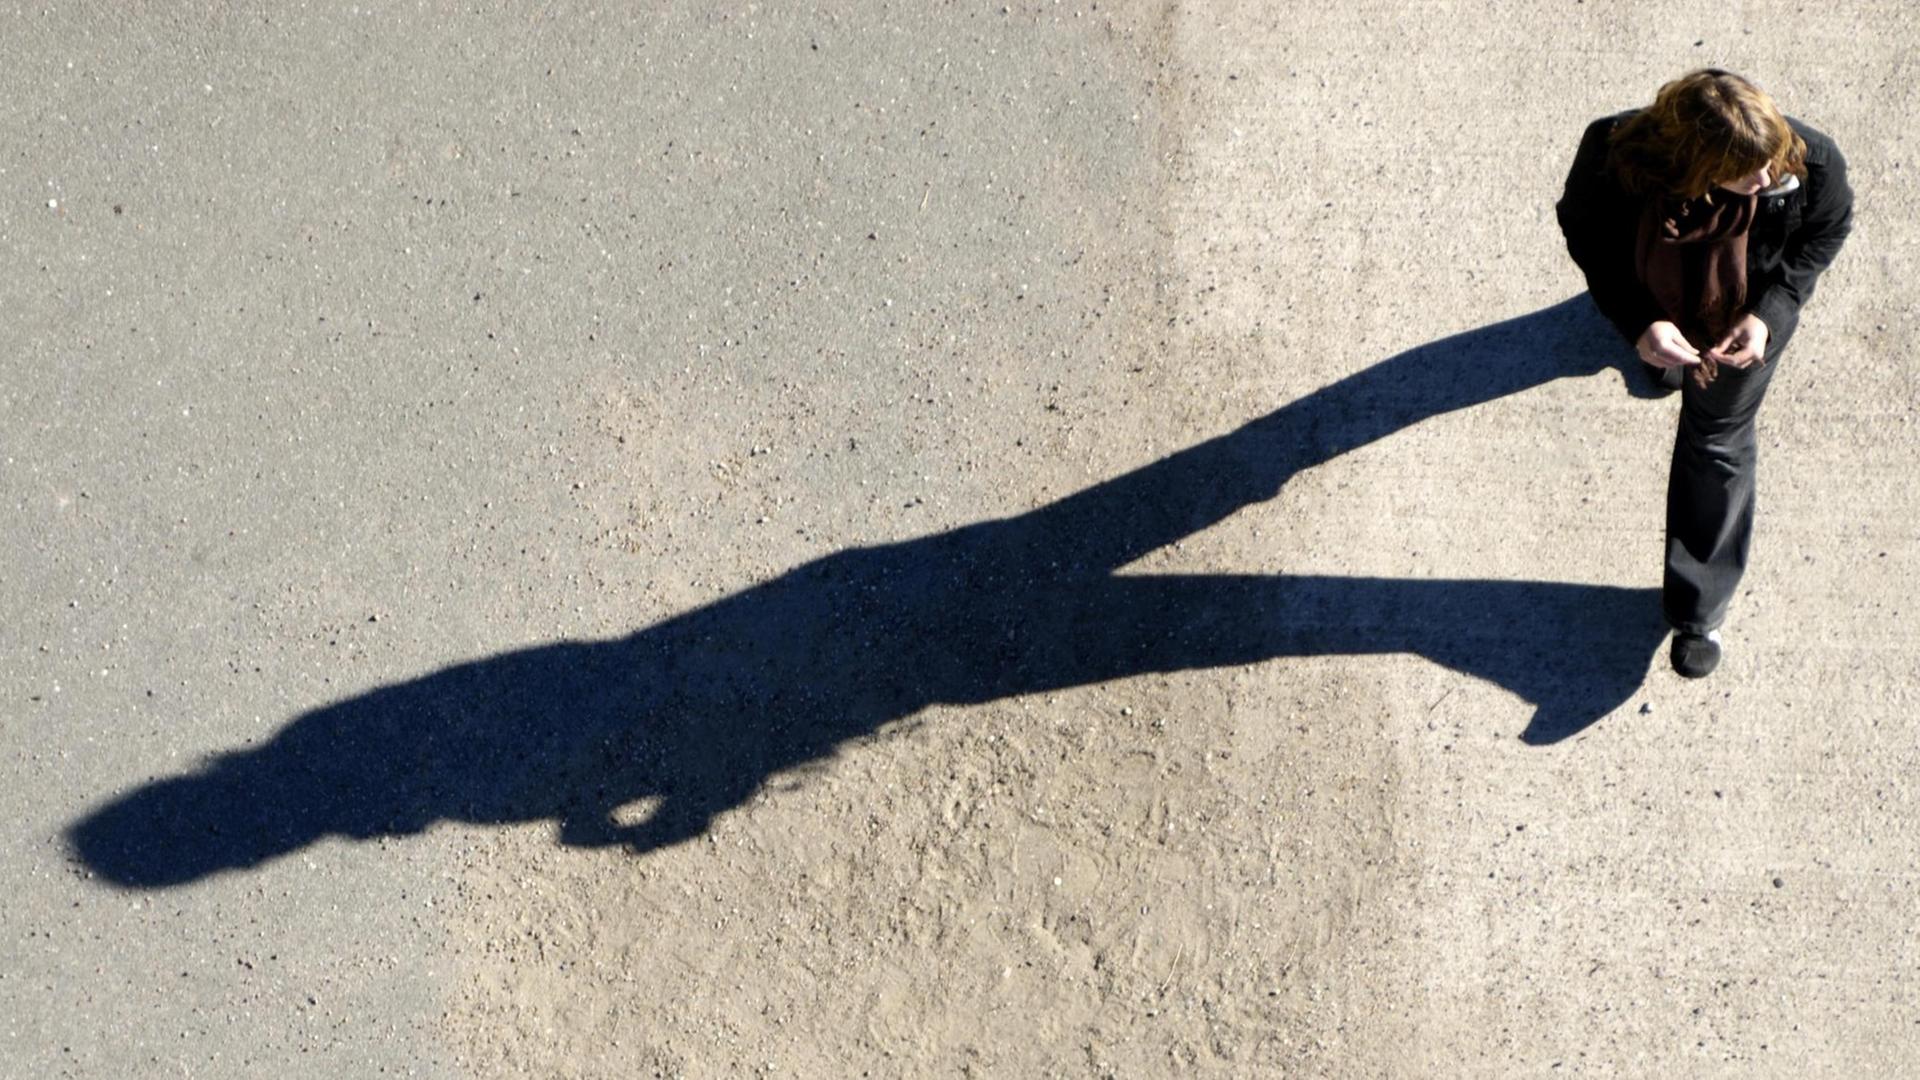 Schatten einer Spaziergängerin aus der Vogelperspektive